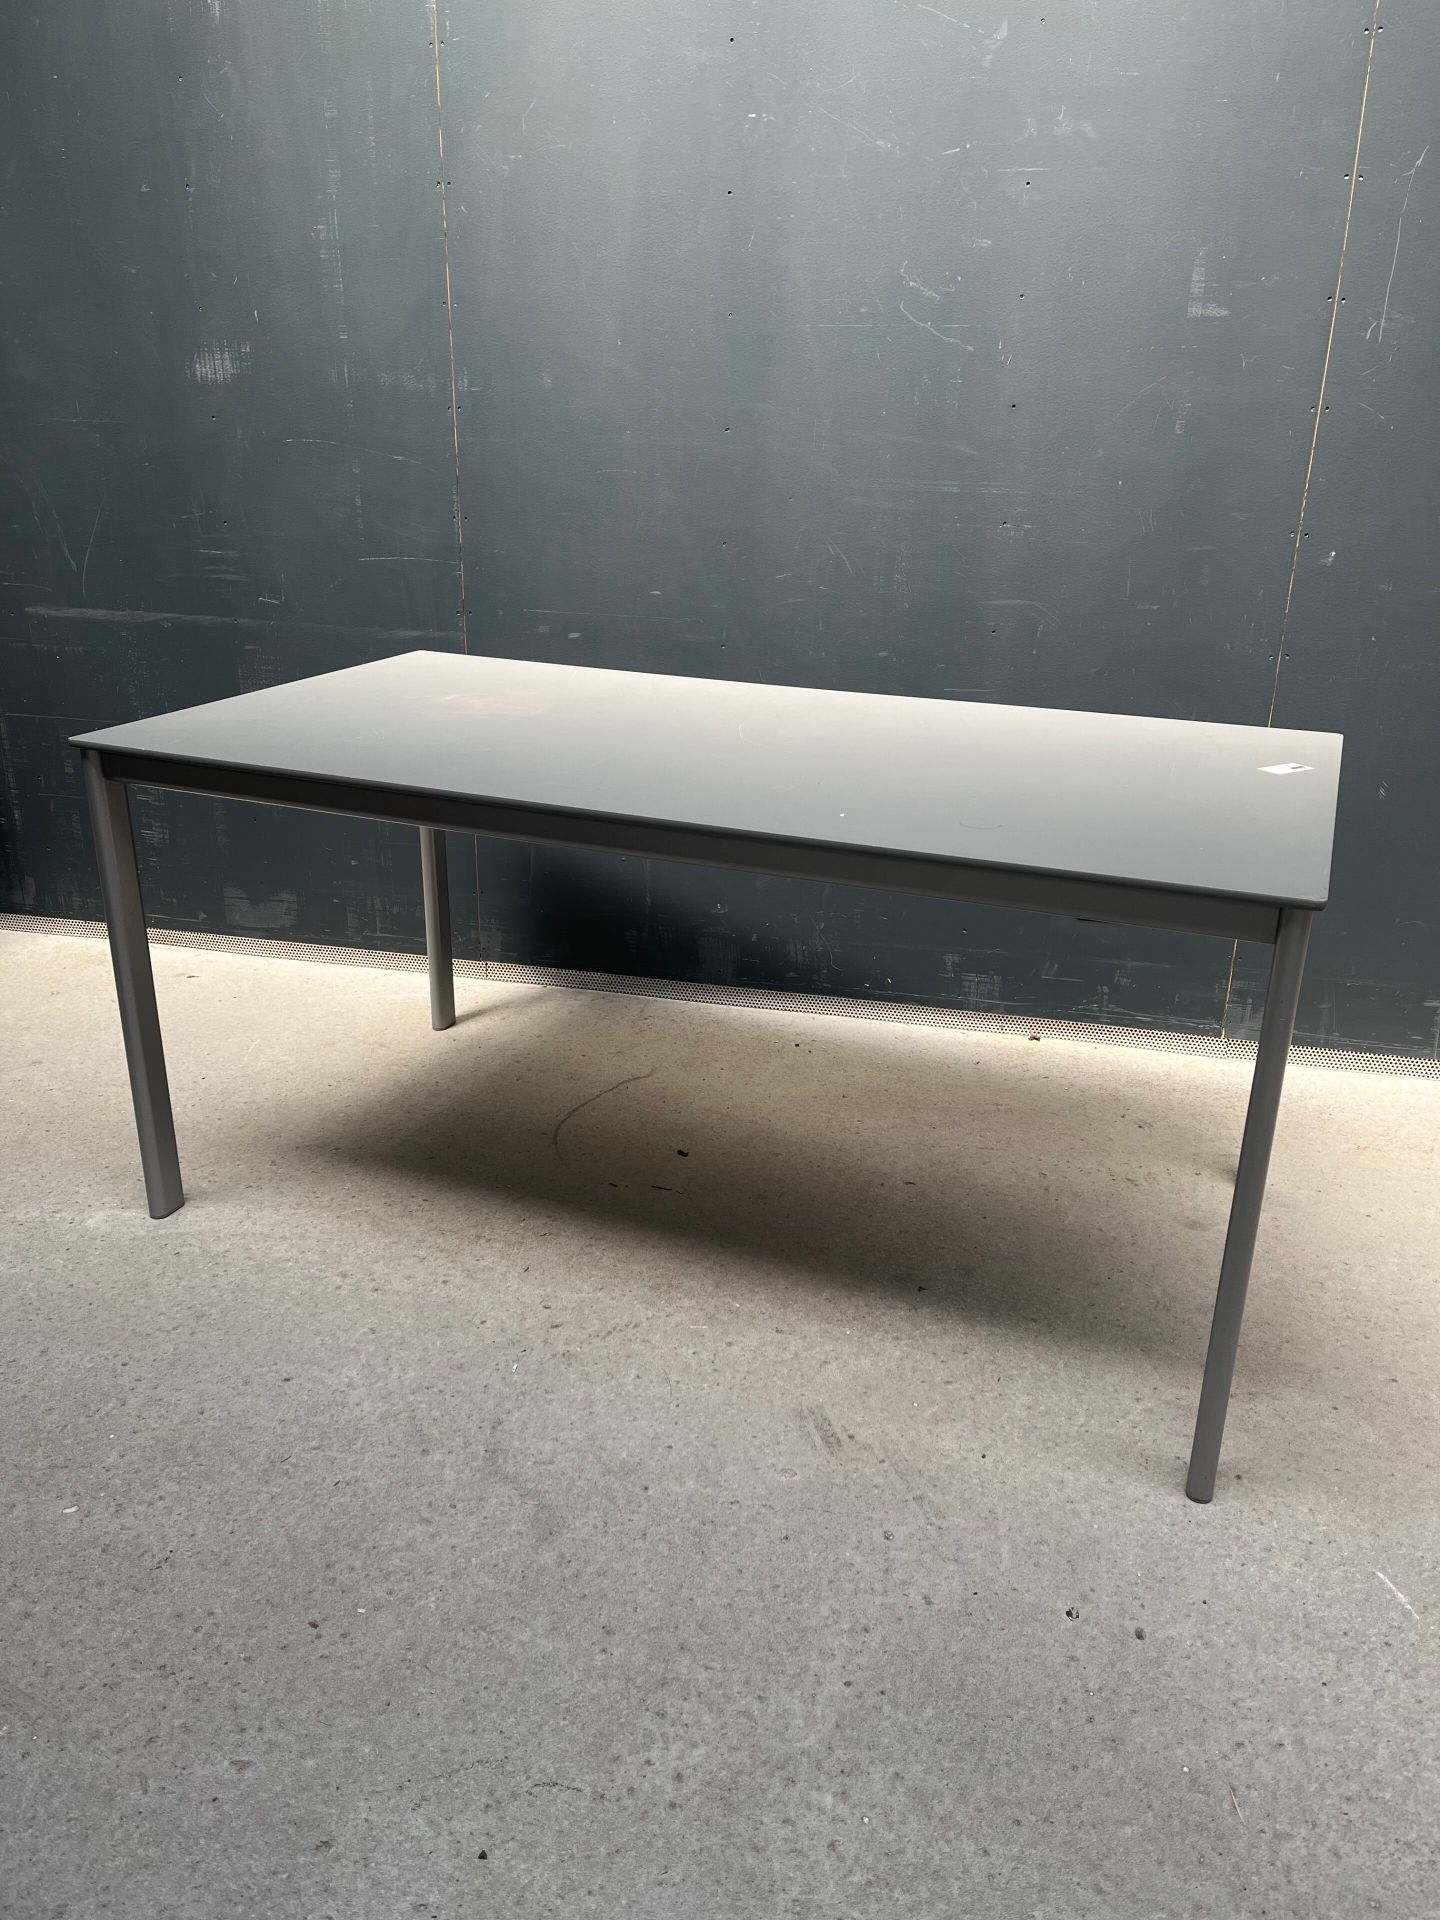 Null Rechteckiger Tisch aus grau eloxiertem Metall.

Kratzer und Restaurierung